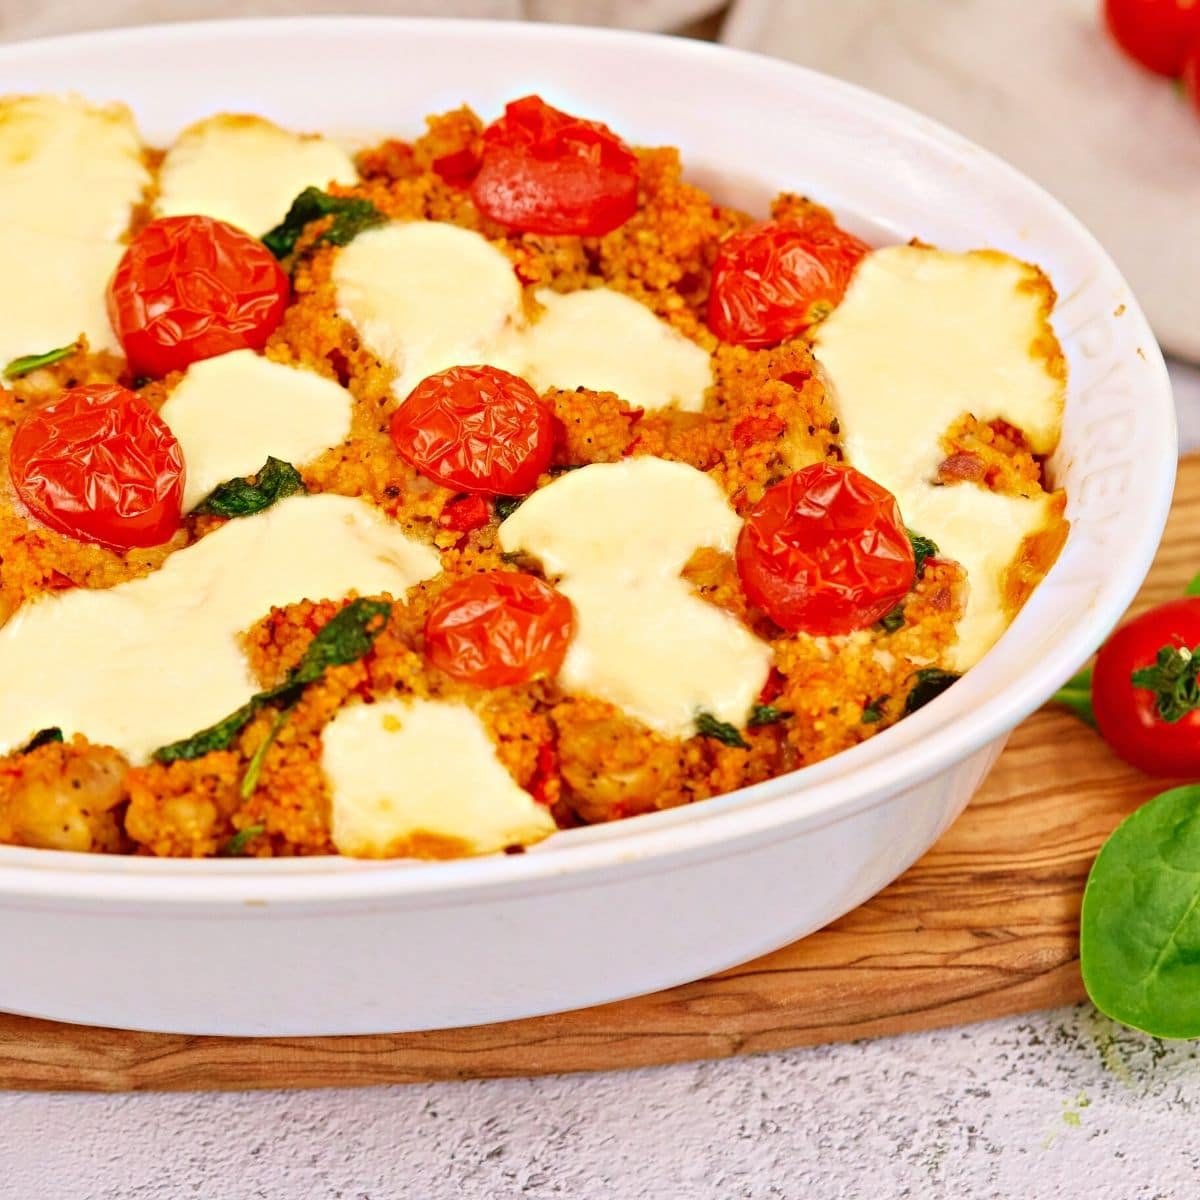 Italian chicken caprese casserole in a white plate.